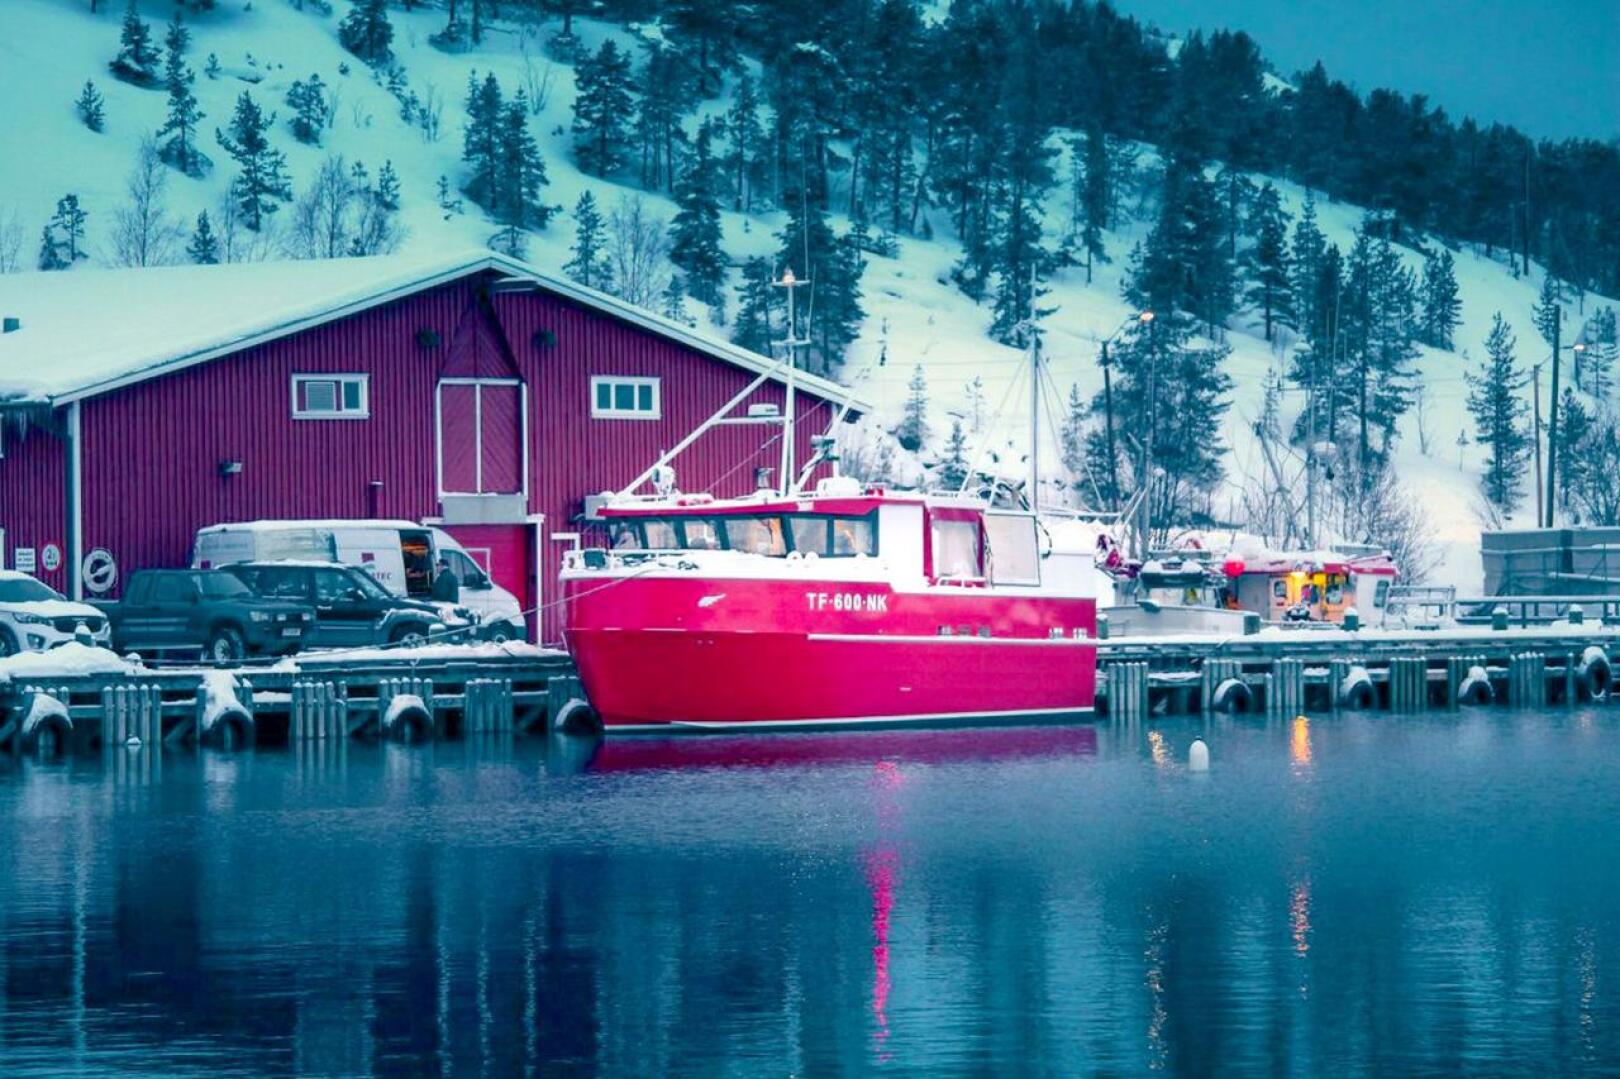 Kokkolalainen Kewatec rakensi ja toimitti keväällä uuden kalastusveneen Pohjois-Norjaan. Uuden hankintapäätöksen on nyt tehnyt Norjan rannikkovartiosto.  